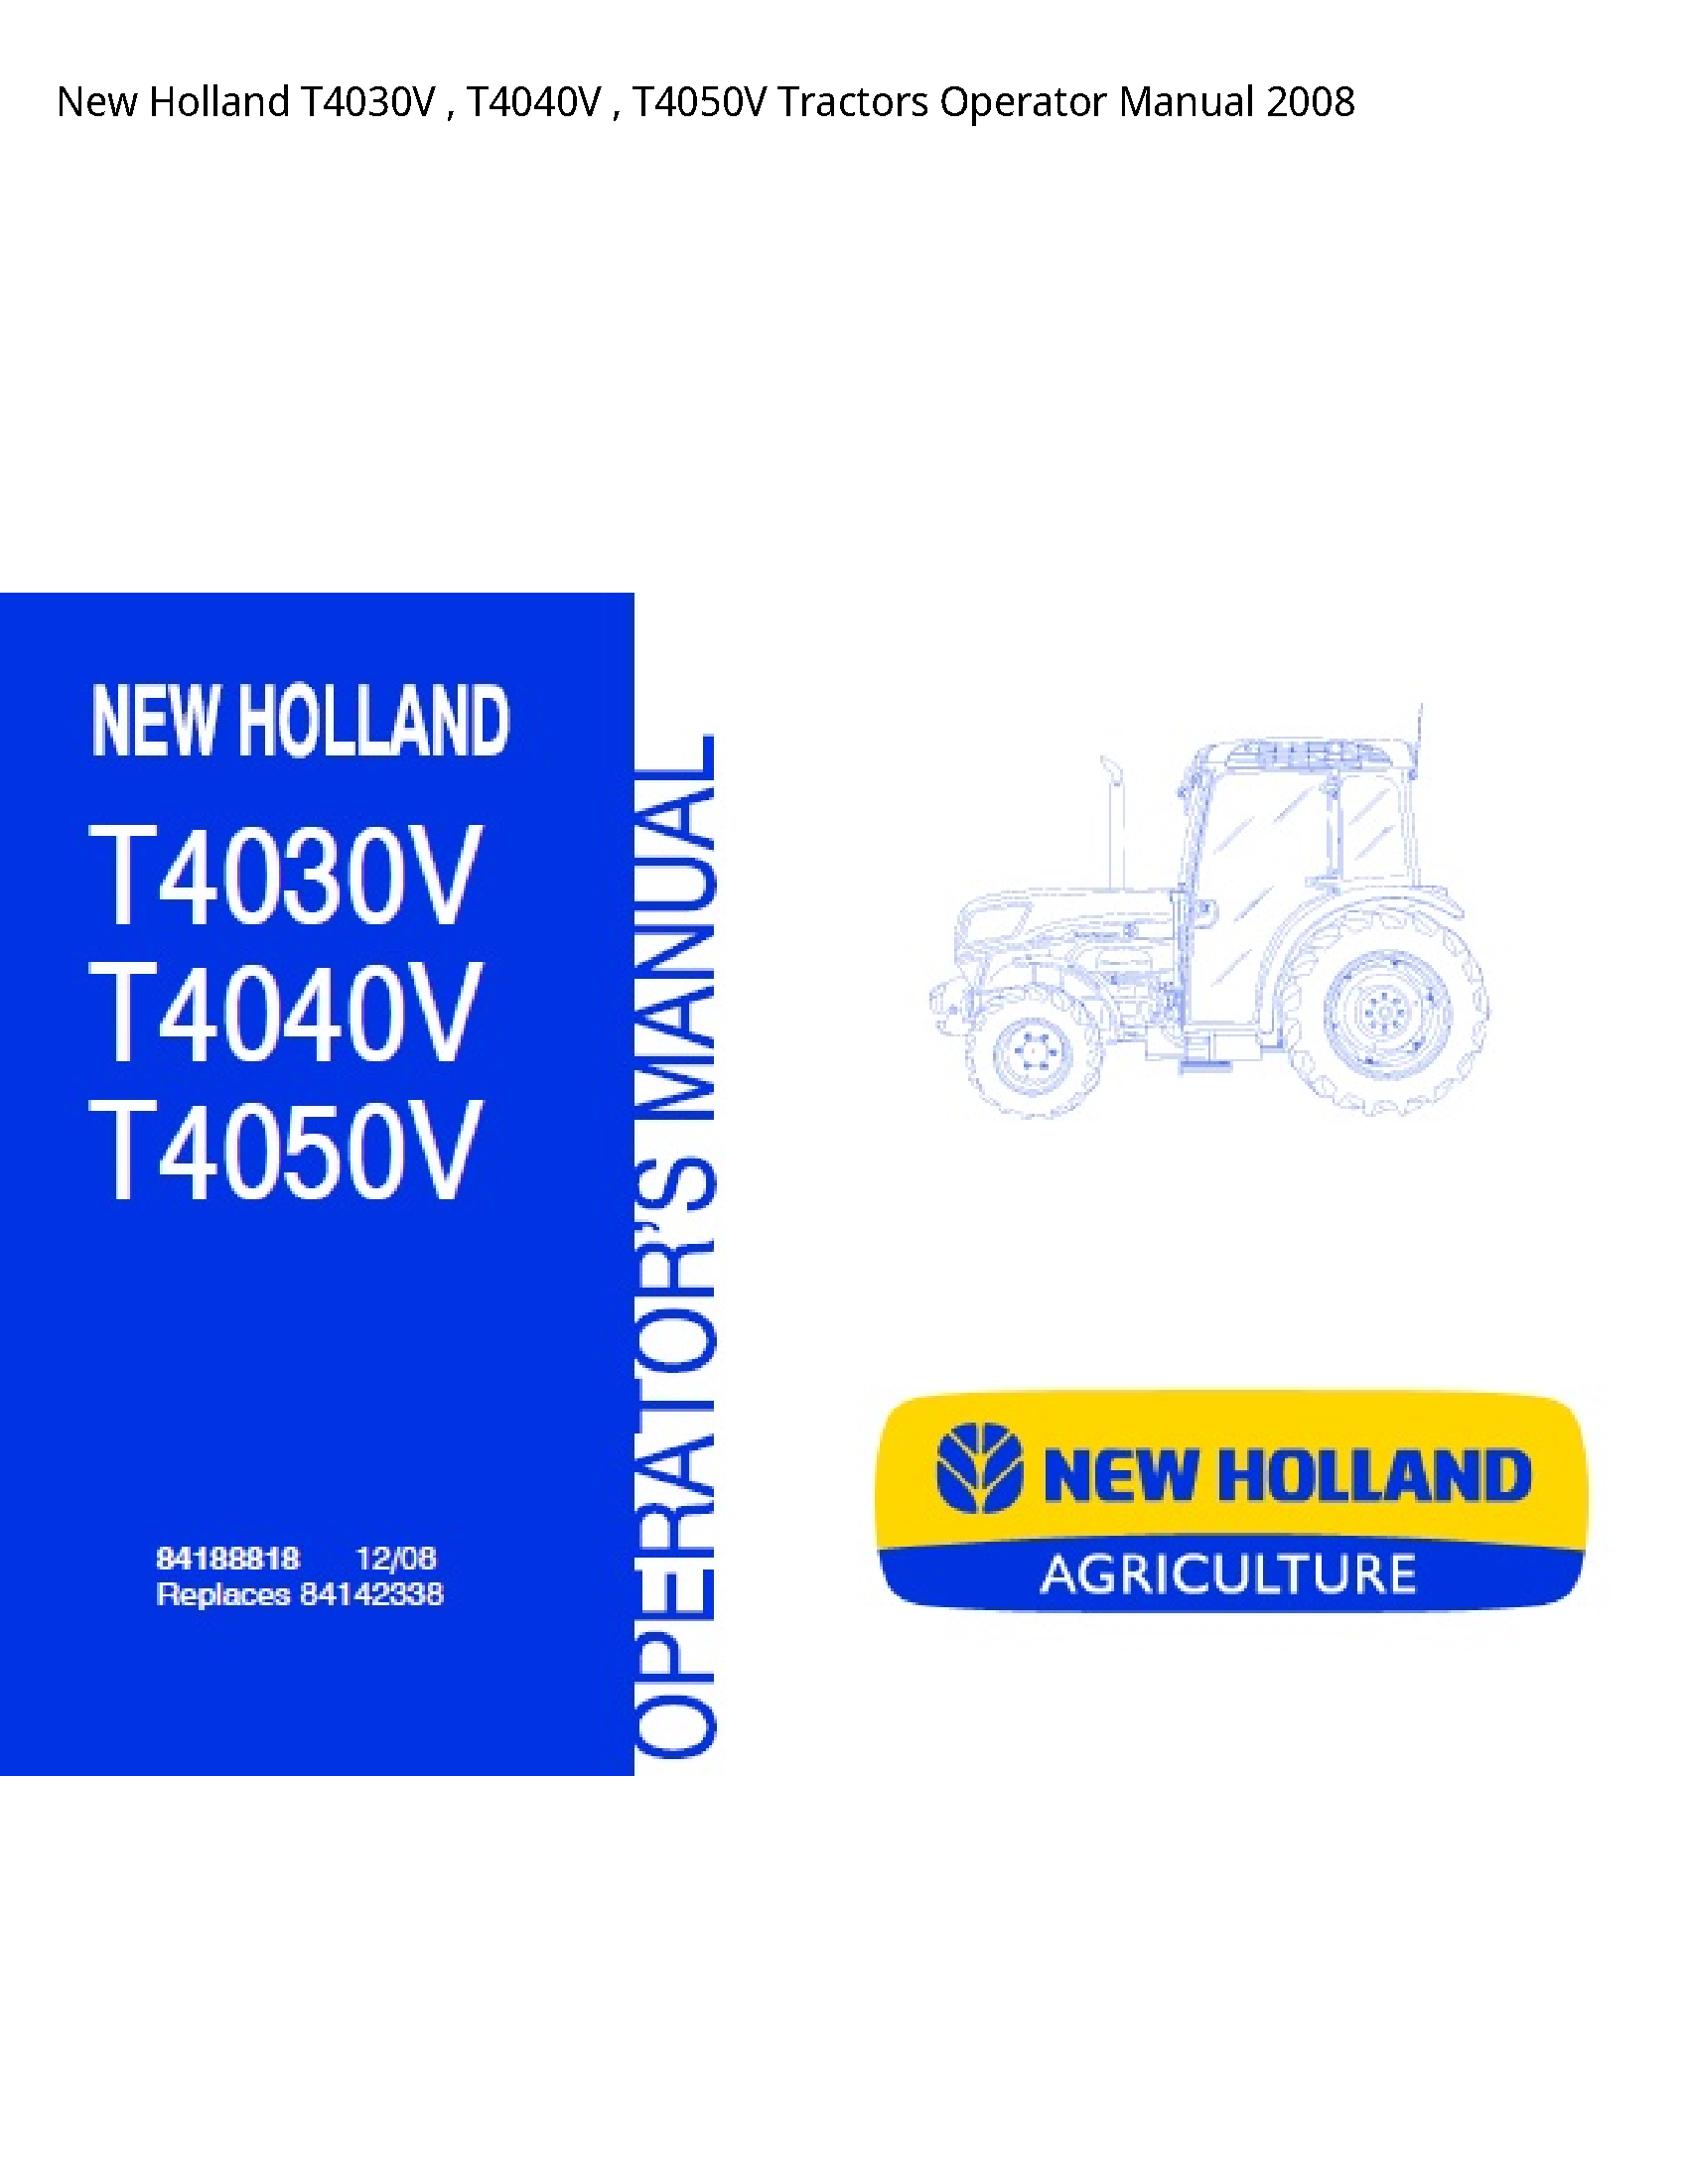 New Holland T4030V Tractors Operator manual